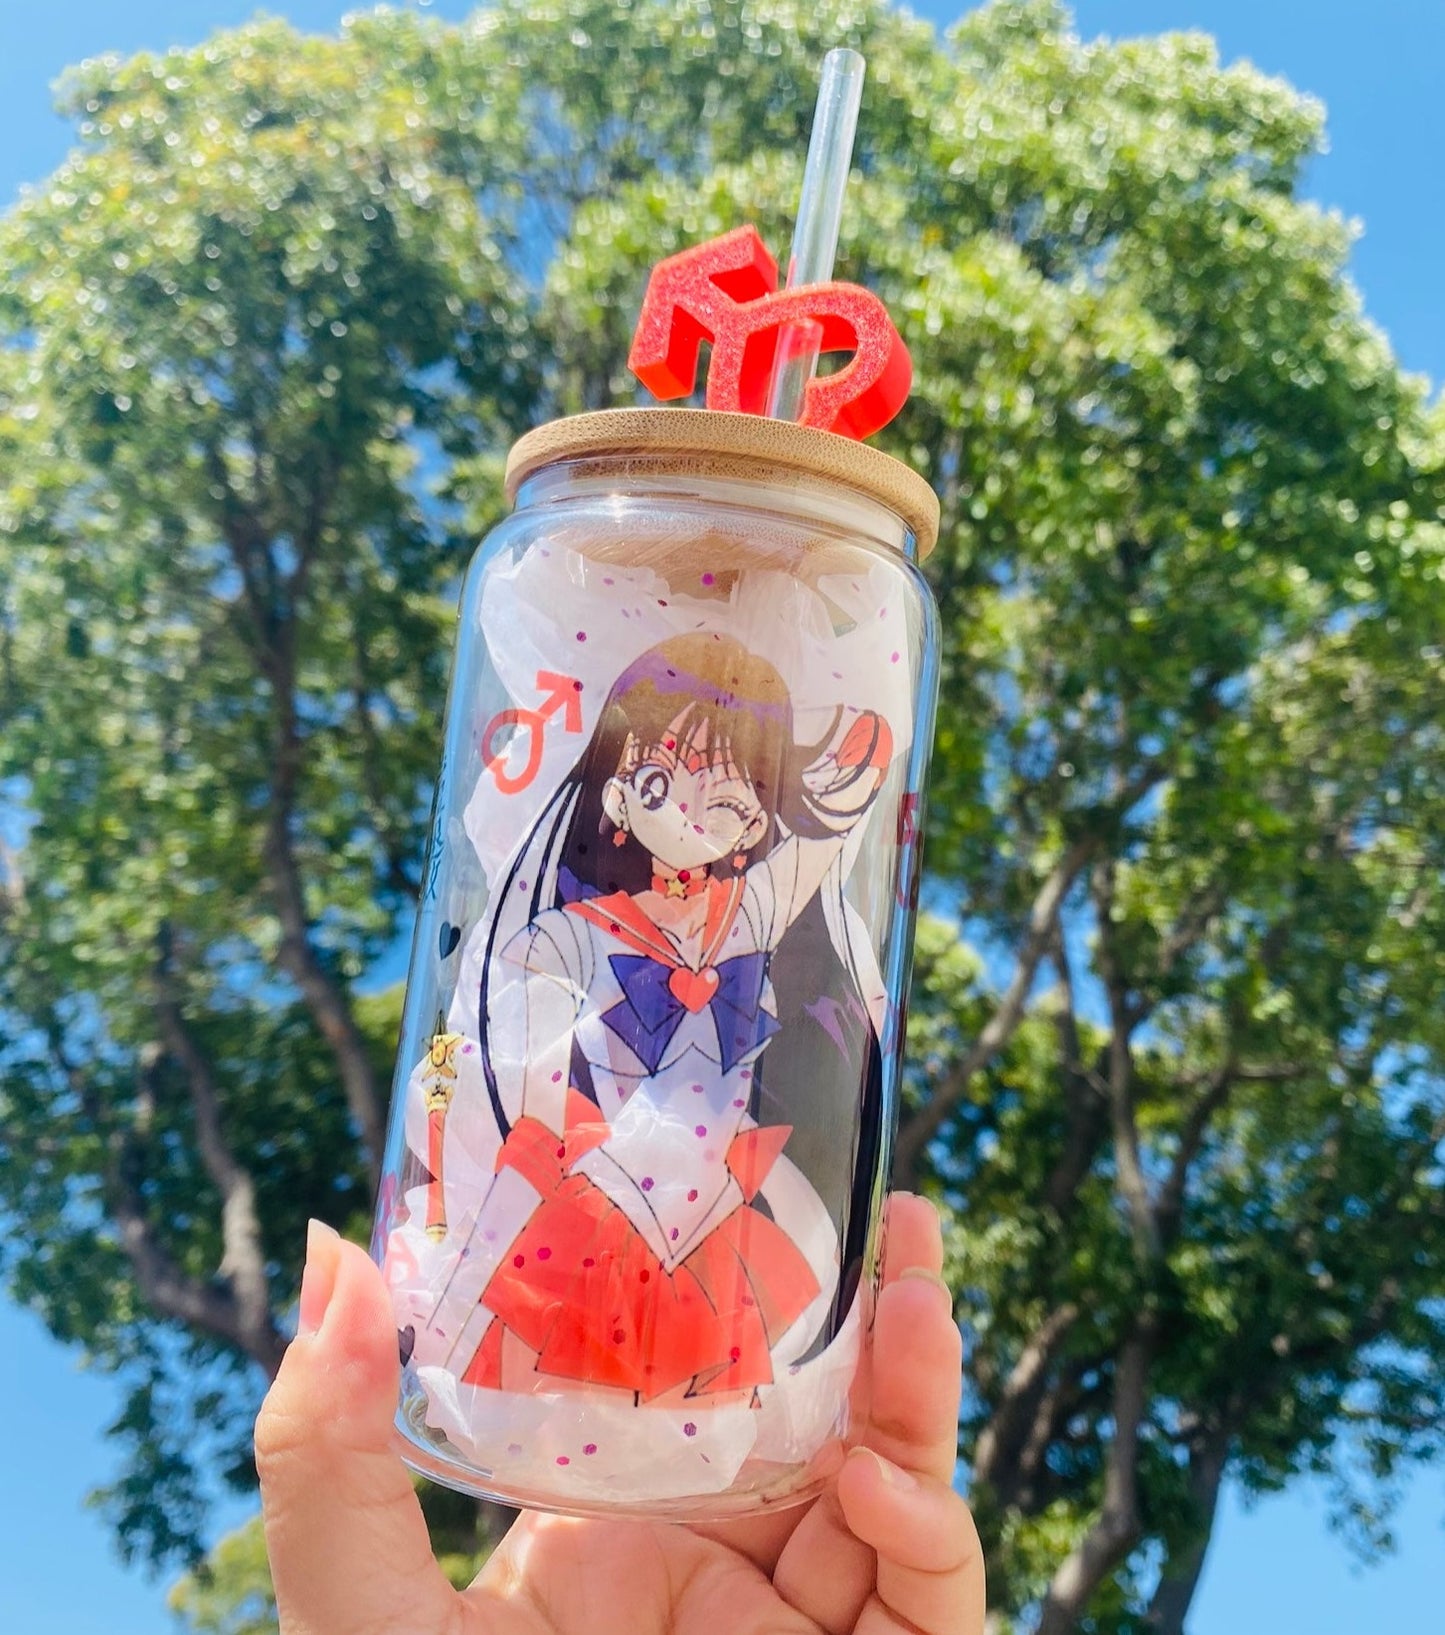 16oz Glass Tumbler / Anime / Manga / Kawaii / Cute / Glass Cup with Lid /  Reusable Straw